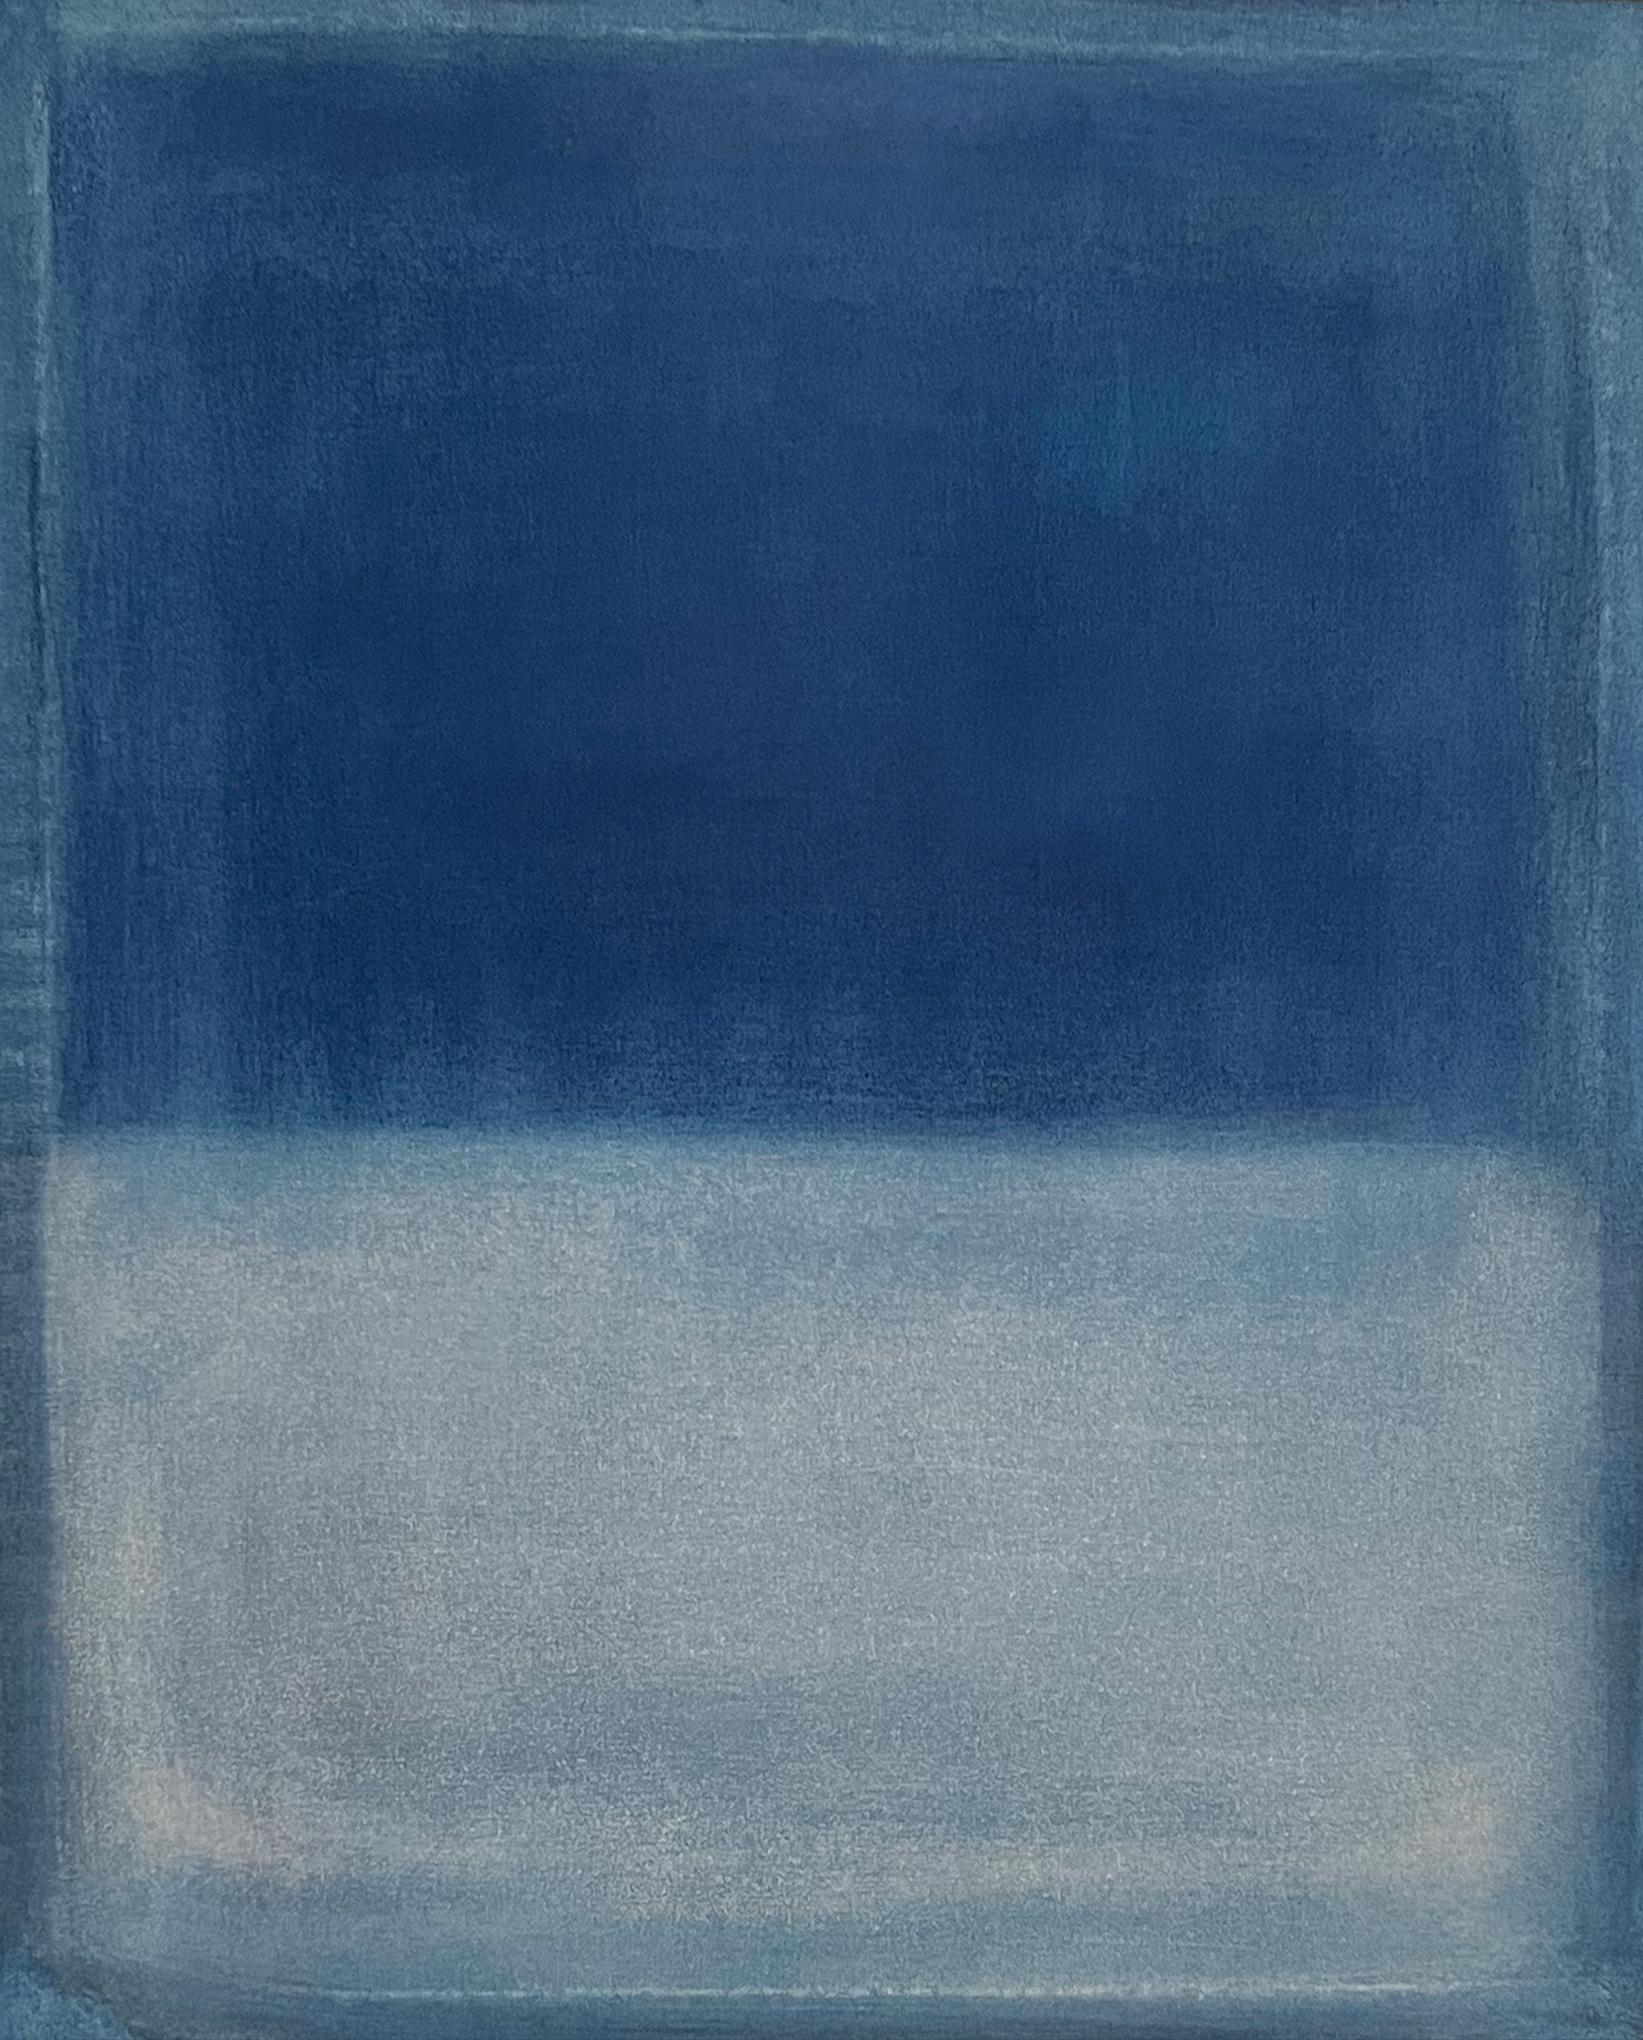 Paysage bleu
art original
huile sur toile
50x40 cm
2023

Marilina Marchica, née en 1984, est née à Agrigente, où elle vit et travaille. Elle est diplômée en peinture à l'Academy Fine Paintings de Bologne et à l'université polytechnique de Valence en